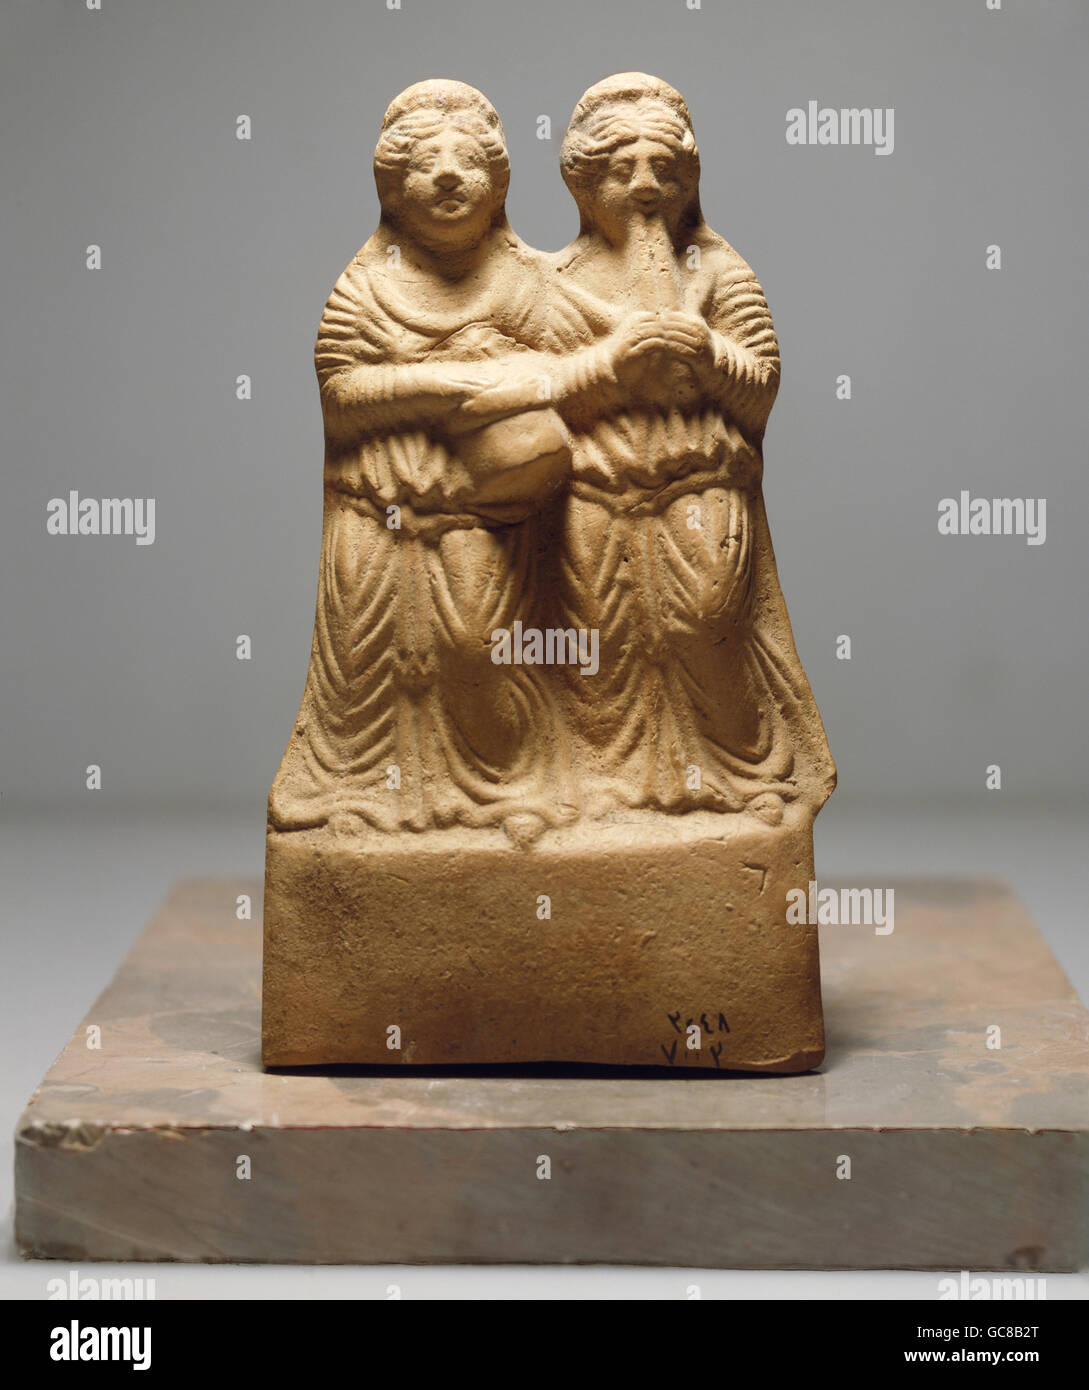 Bildende Kunst, antike, Römisches Reich, Skulptur, zwei Musikerinnen, Nordsyrien, 1./2. Jh., Nationalmuseum in Damaskus Stockfoto